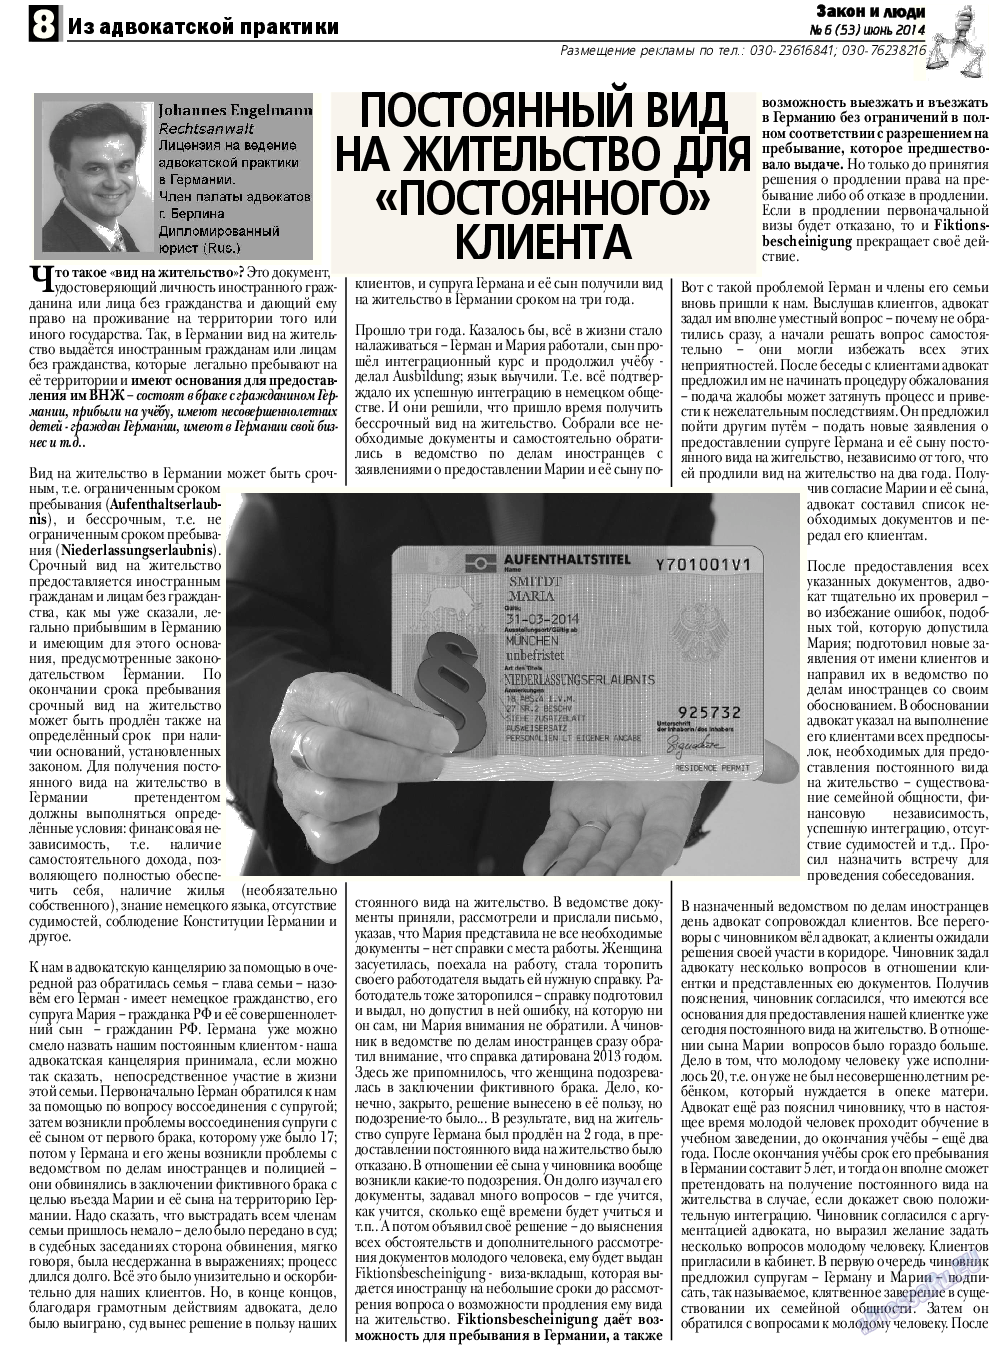 Закон и люди, газета. 2014 №6 стр.8